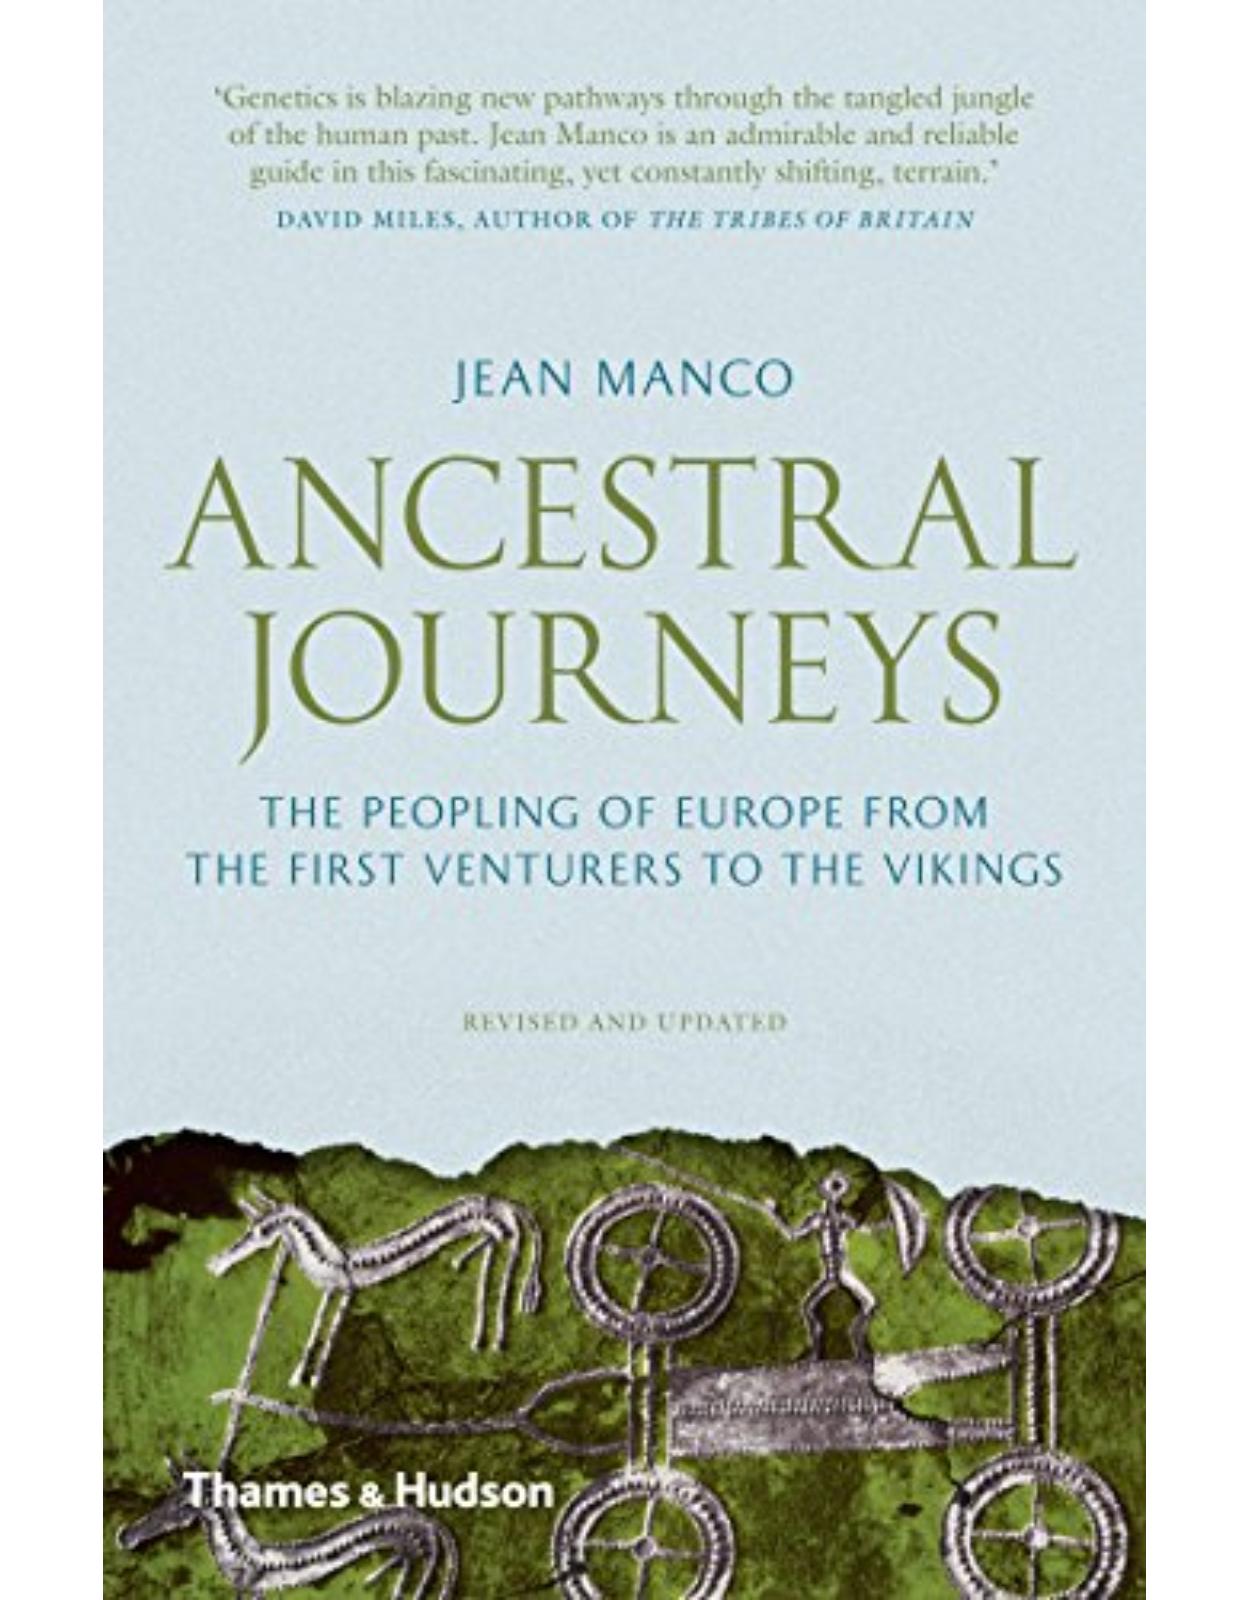 Ancestral journeys